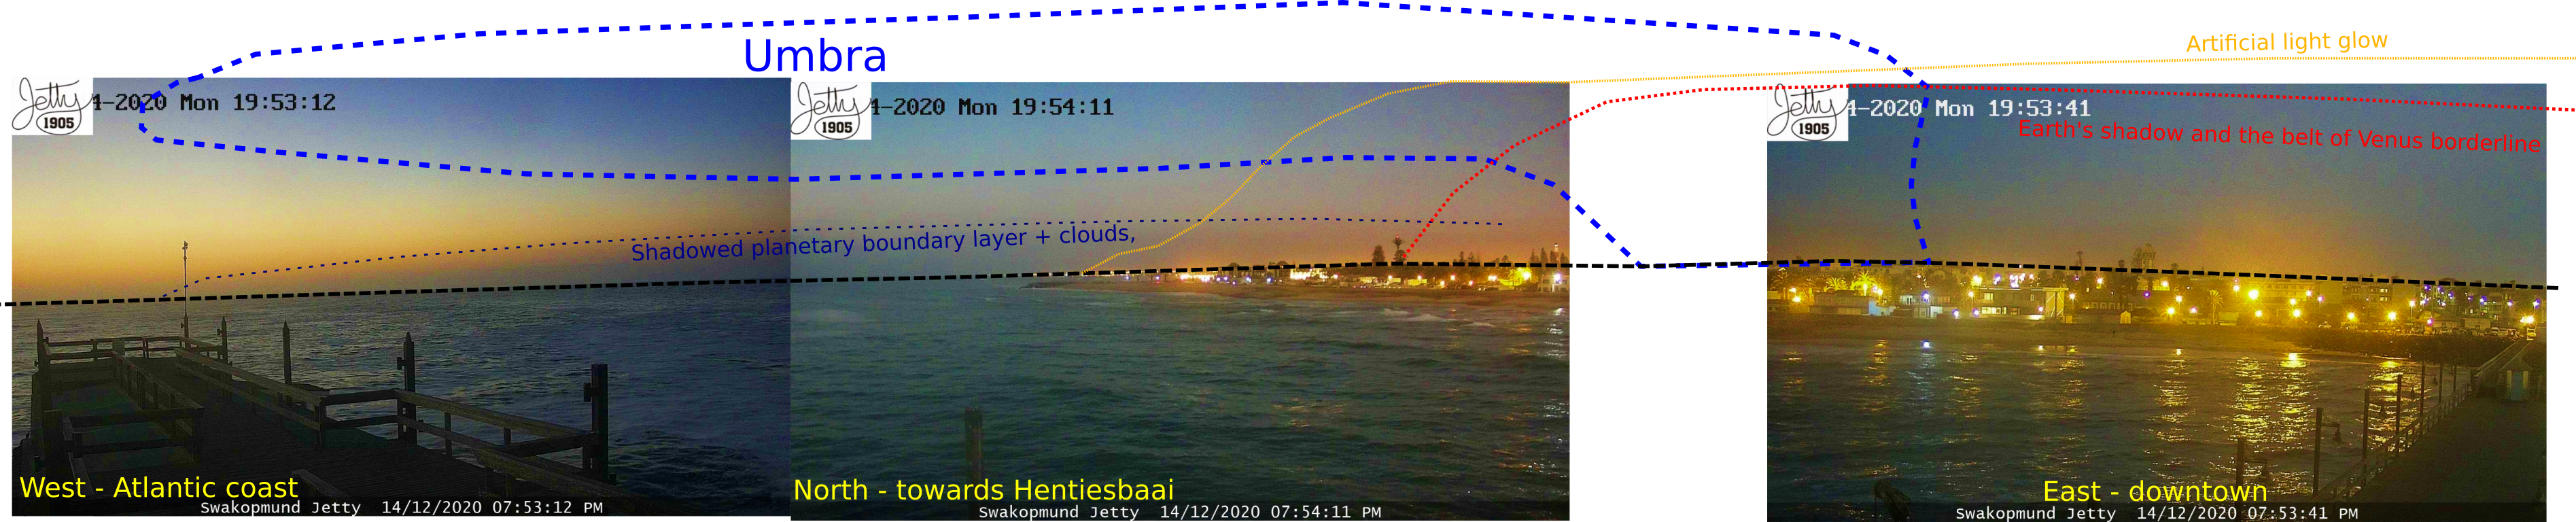 Swakompunt deep partial solar eclipse Dec 14, 2020 webcam panorama with umbra